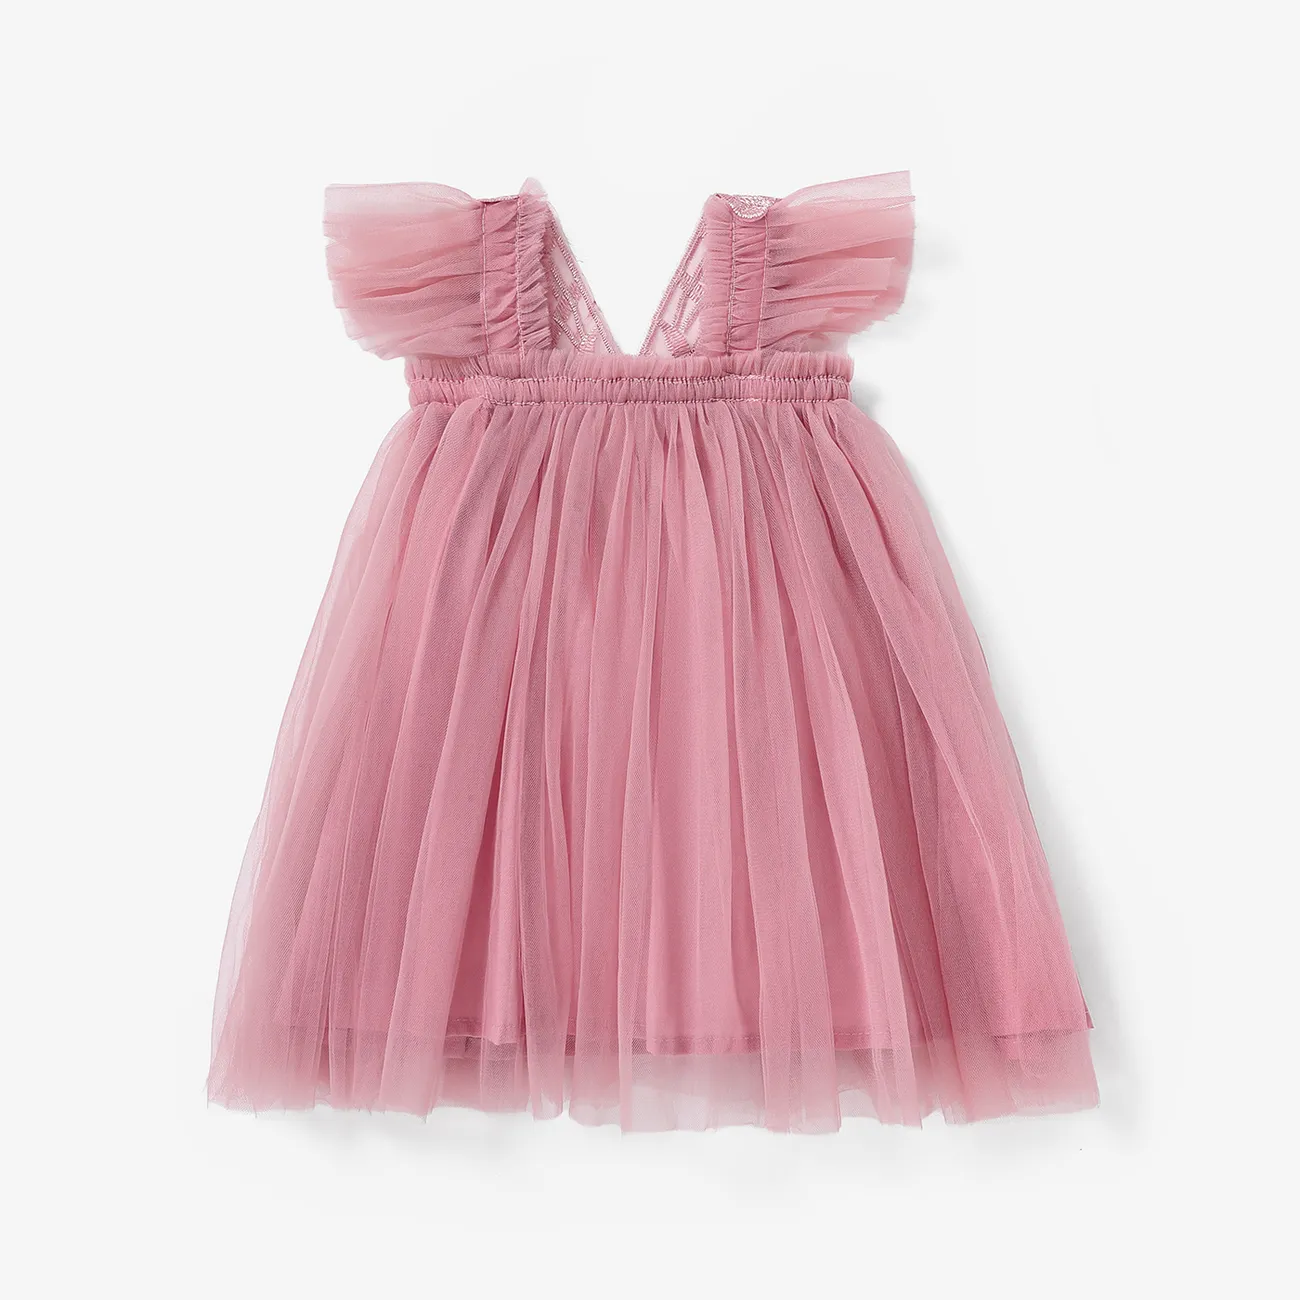 嬰兒/兒童女孩甜美超觸覺 3D 蝴蝶結印花連衣裙 粉色 big image 1